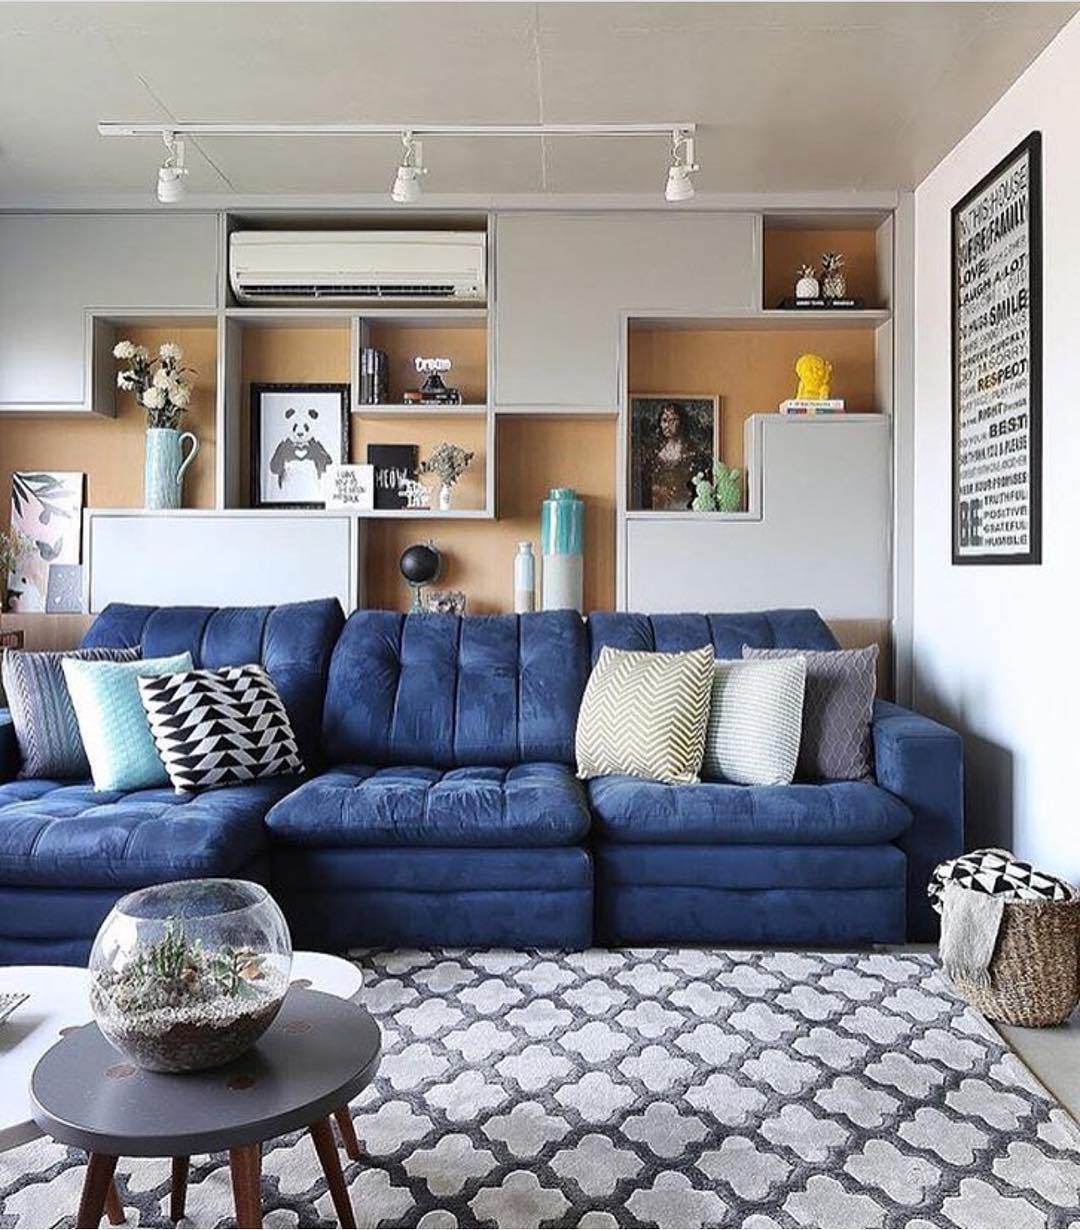 apartamento com sofa azul retratil